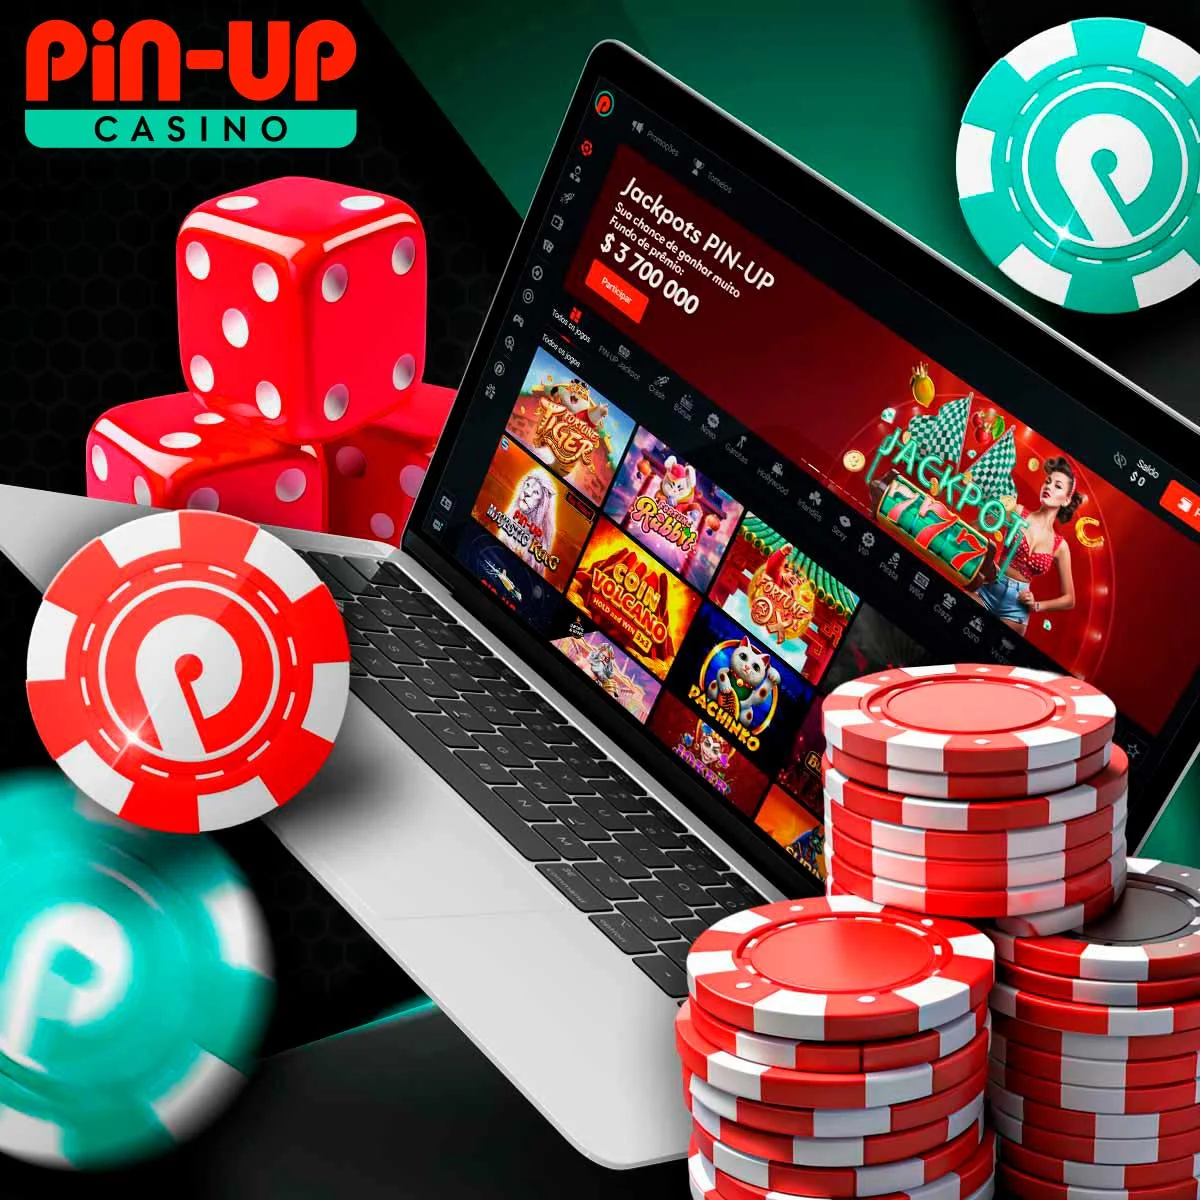 Jogos da Pin-Up Casino no mercado brasileiro